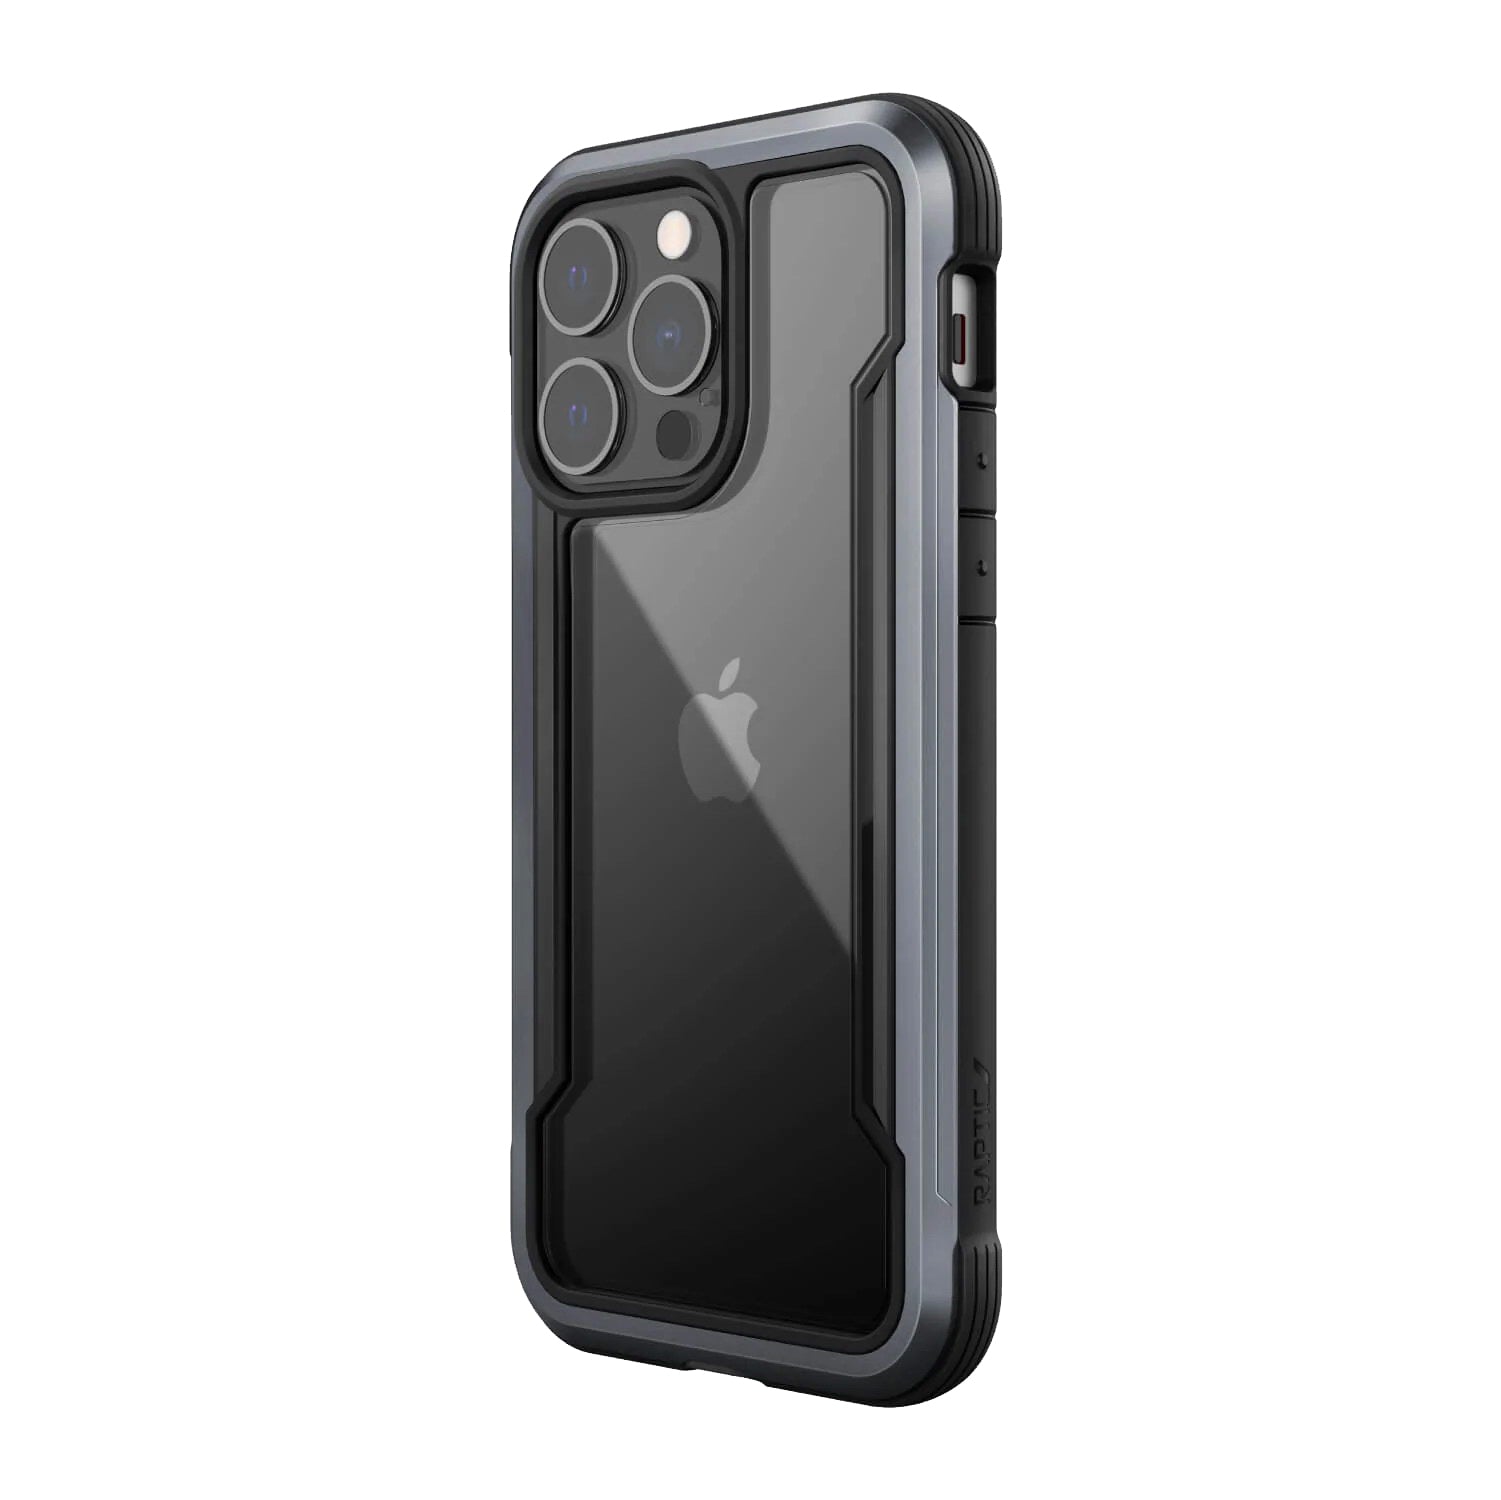 X-Doria Defense Shield Back Cover For iPhone 13 Pro 6.1 - Black